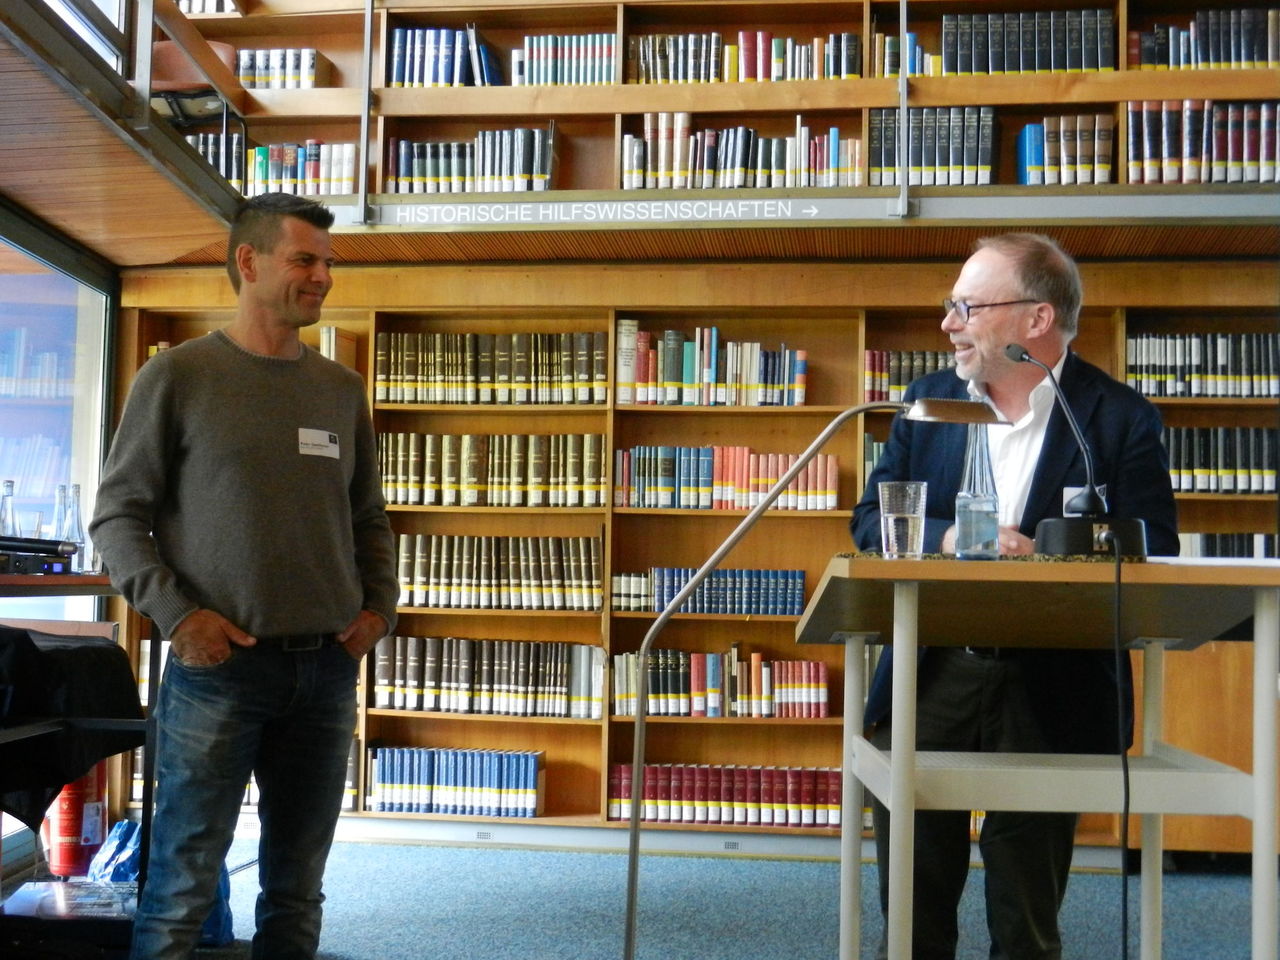 Ein Foto von den beiden Sprechern der Veranstaltung.